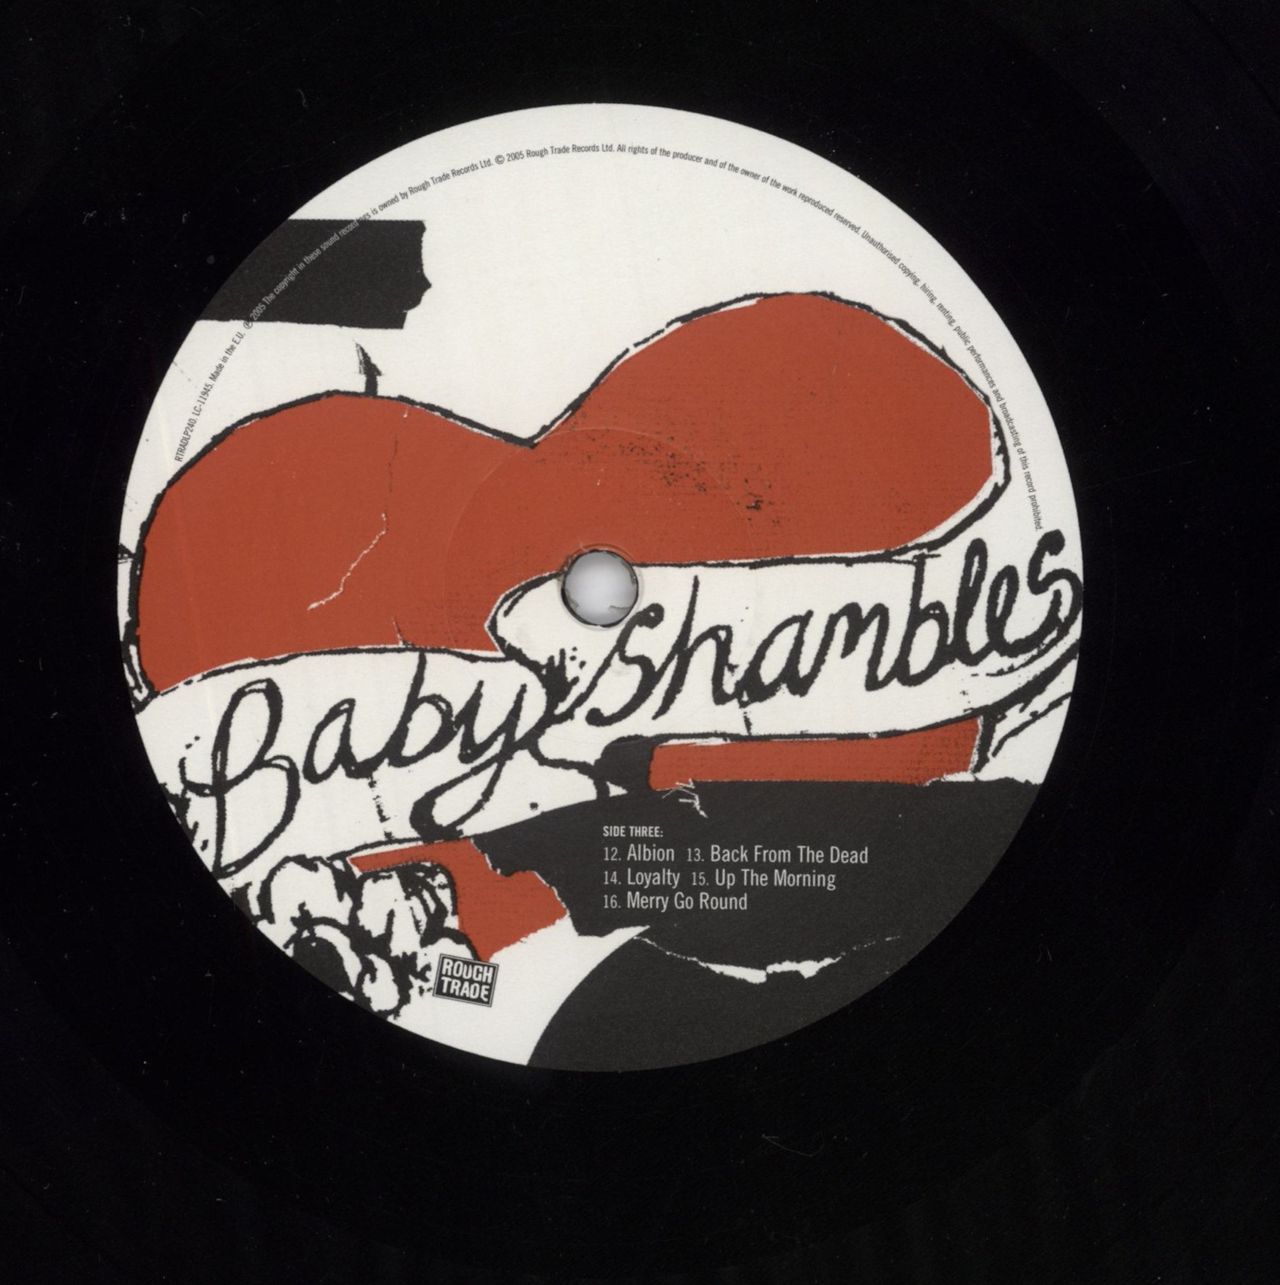 1280px x 1285px - Babyshambles Down In Albion UK 2-LP vinyl set â€” RareVinyl.com